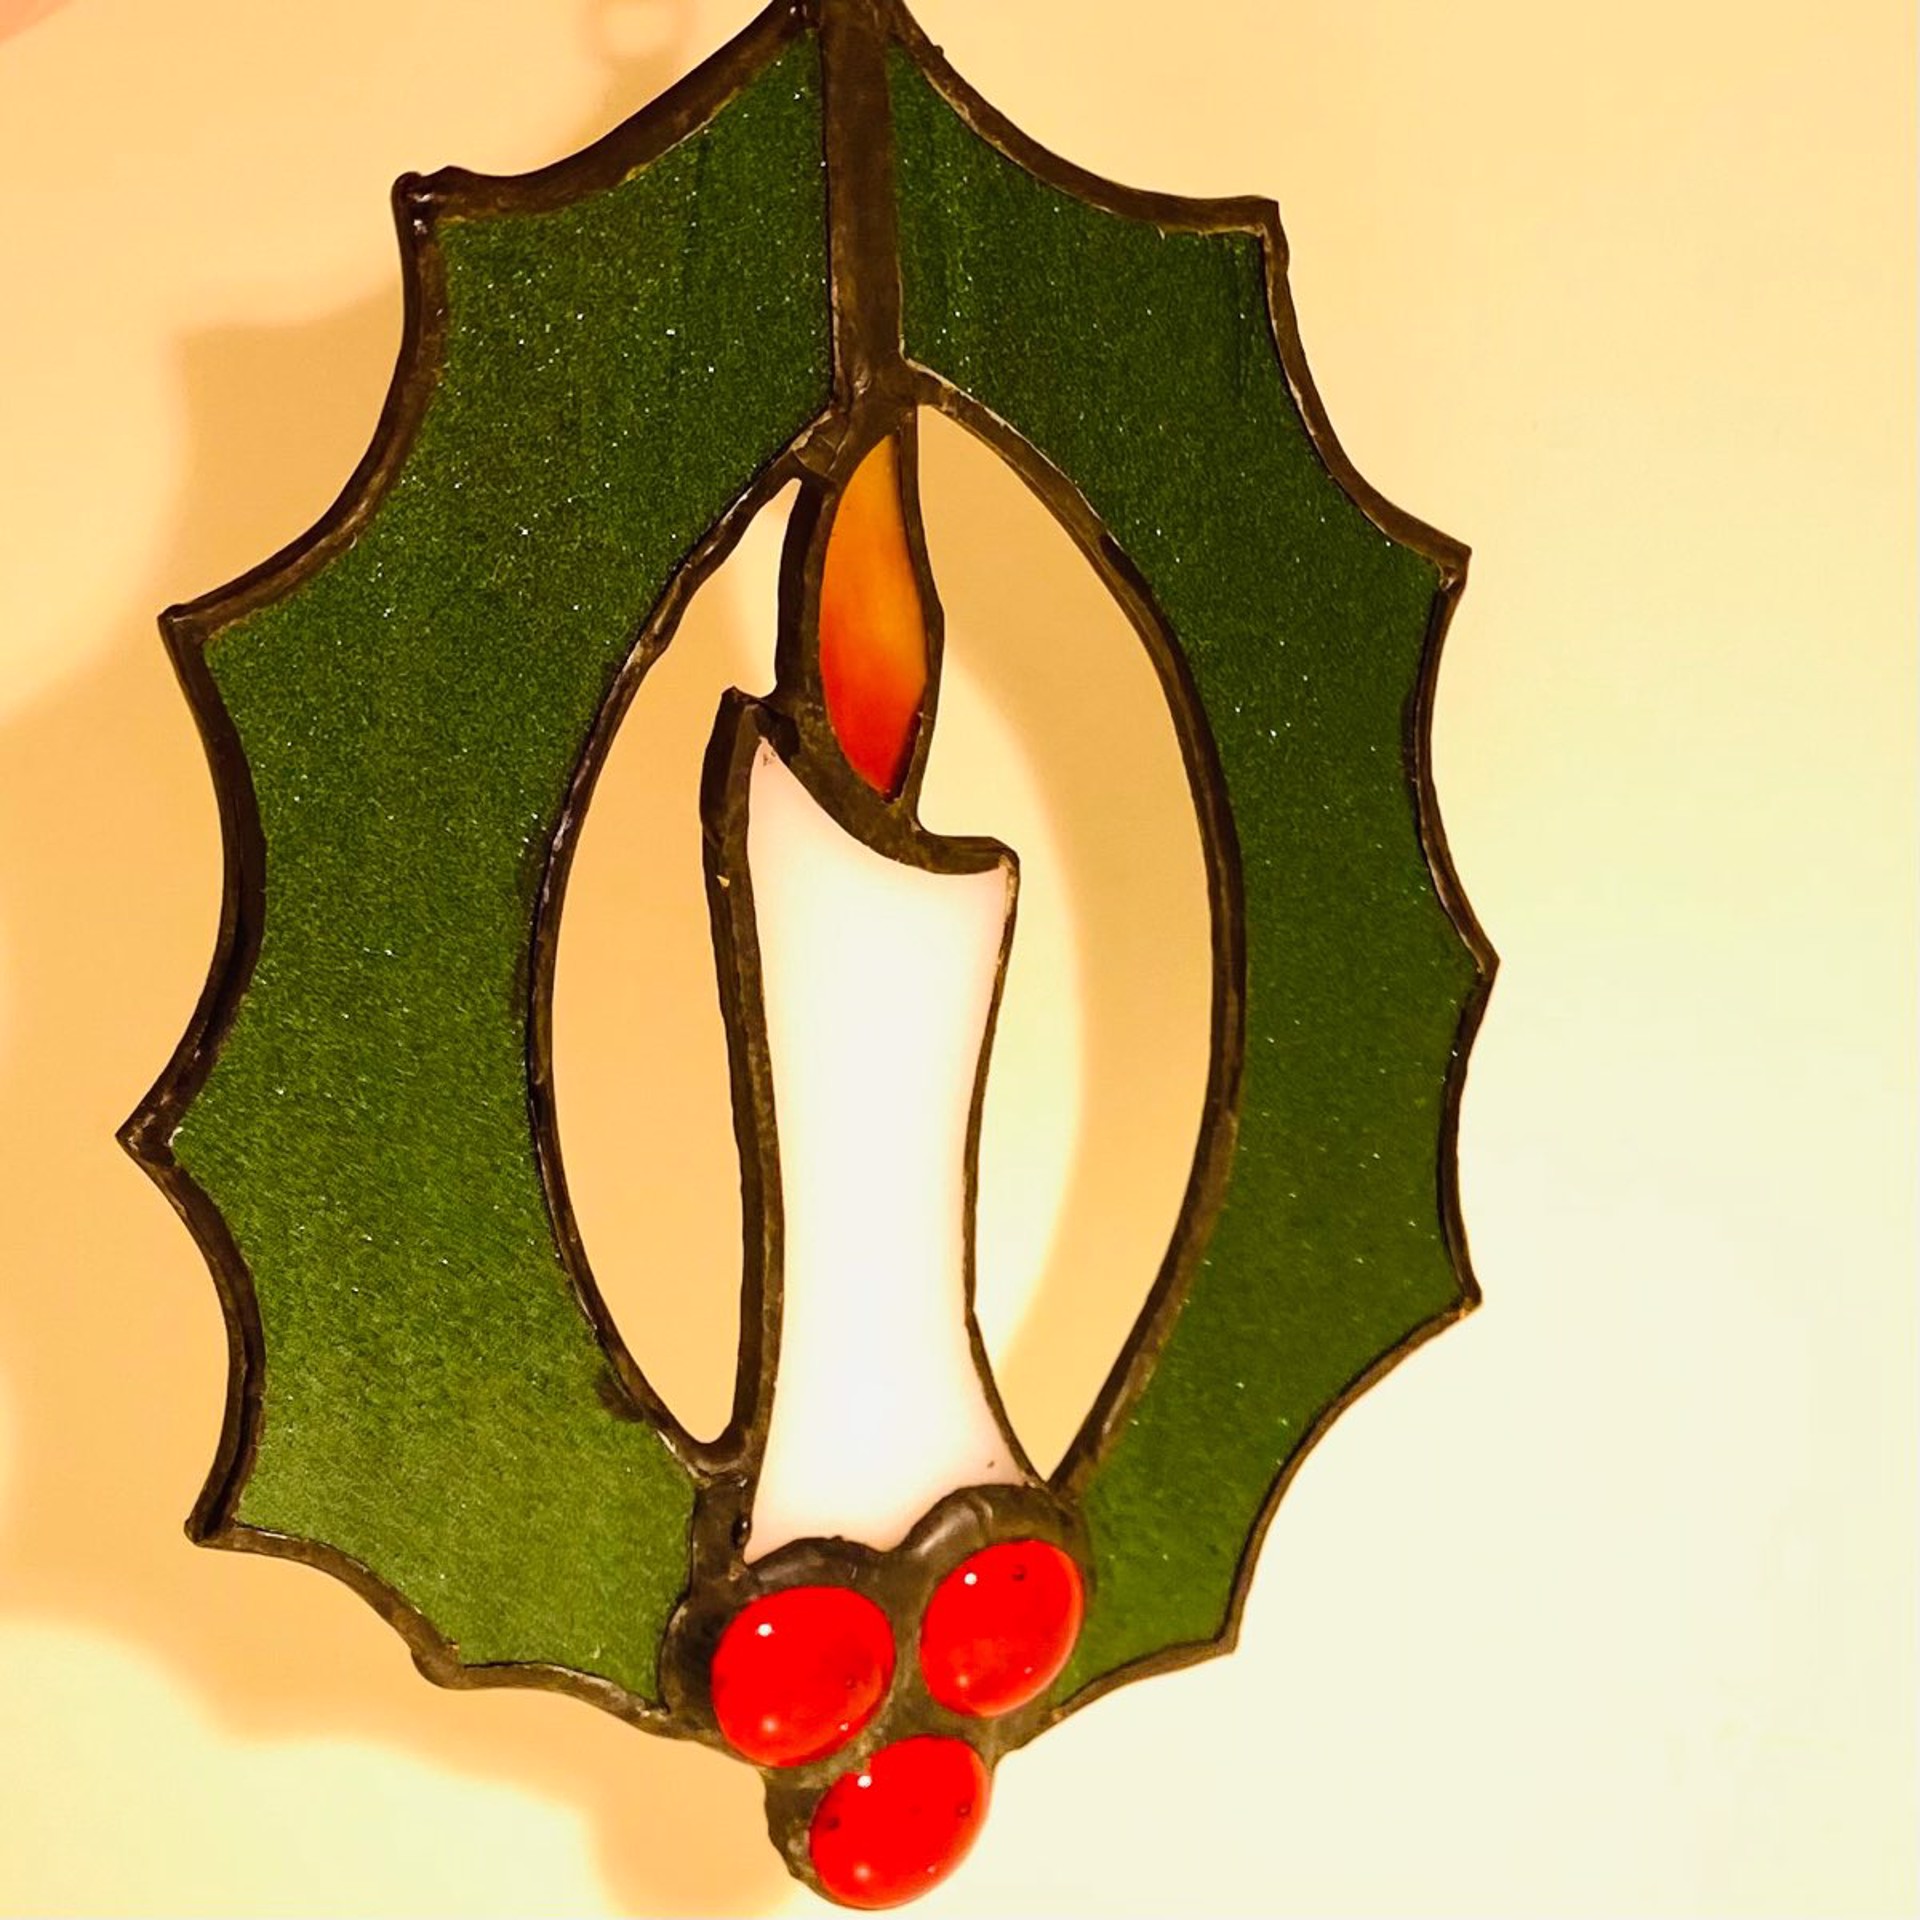 Wreath Ornament by John Schumacher